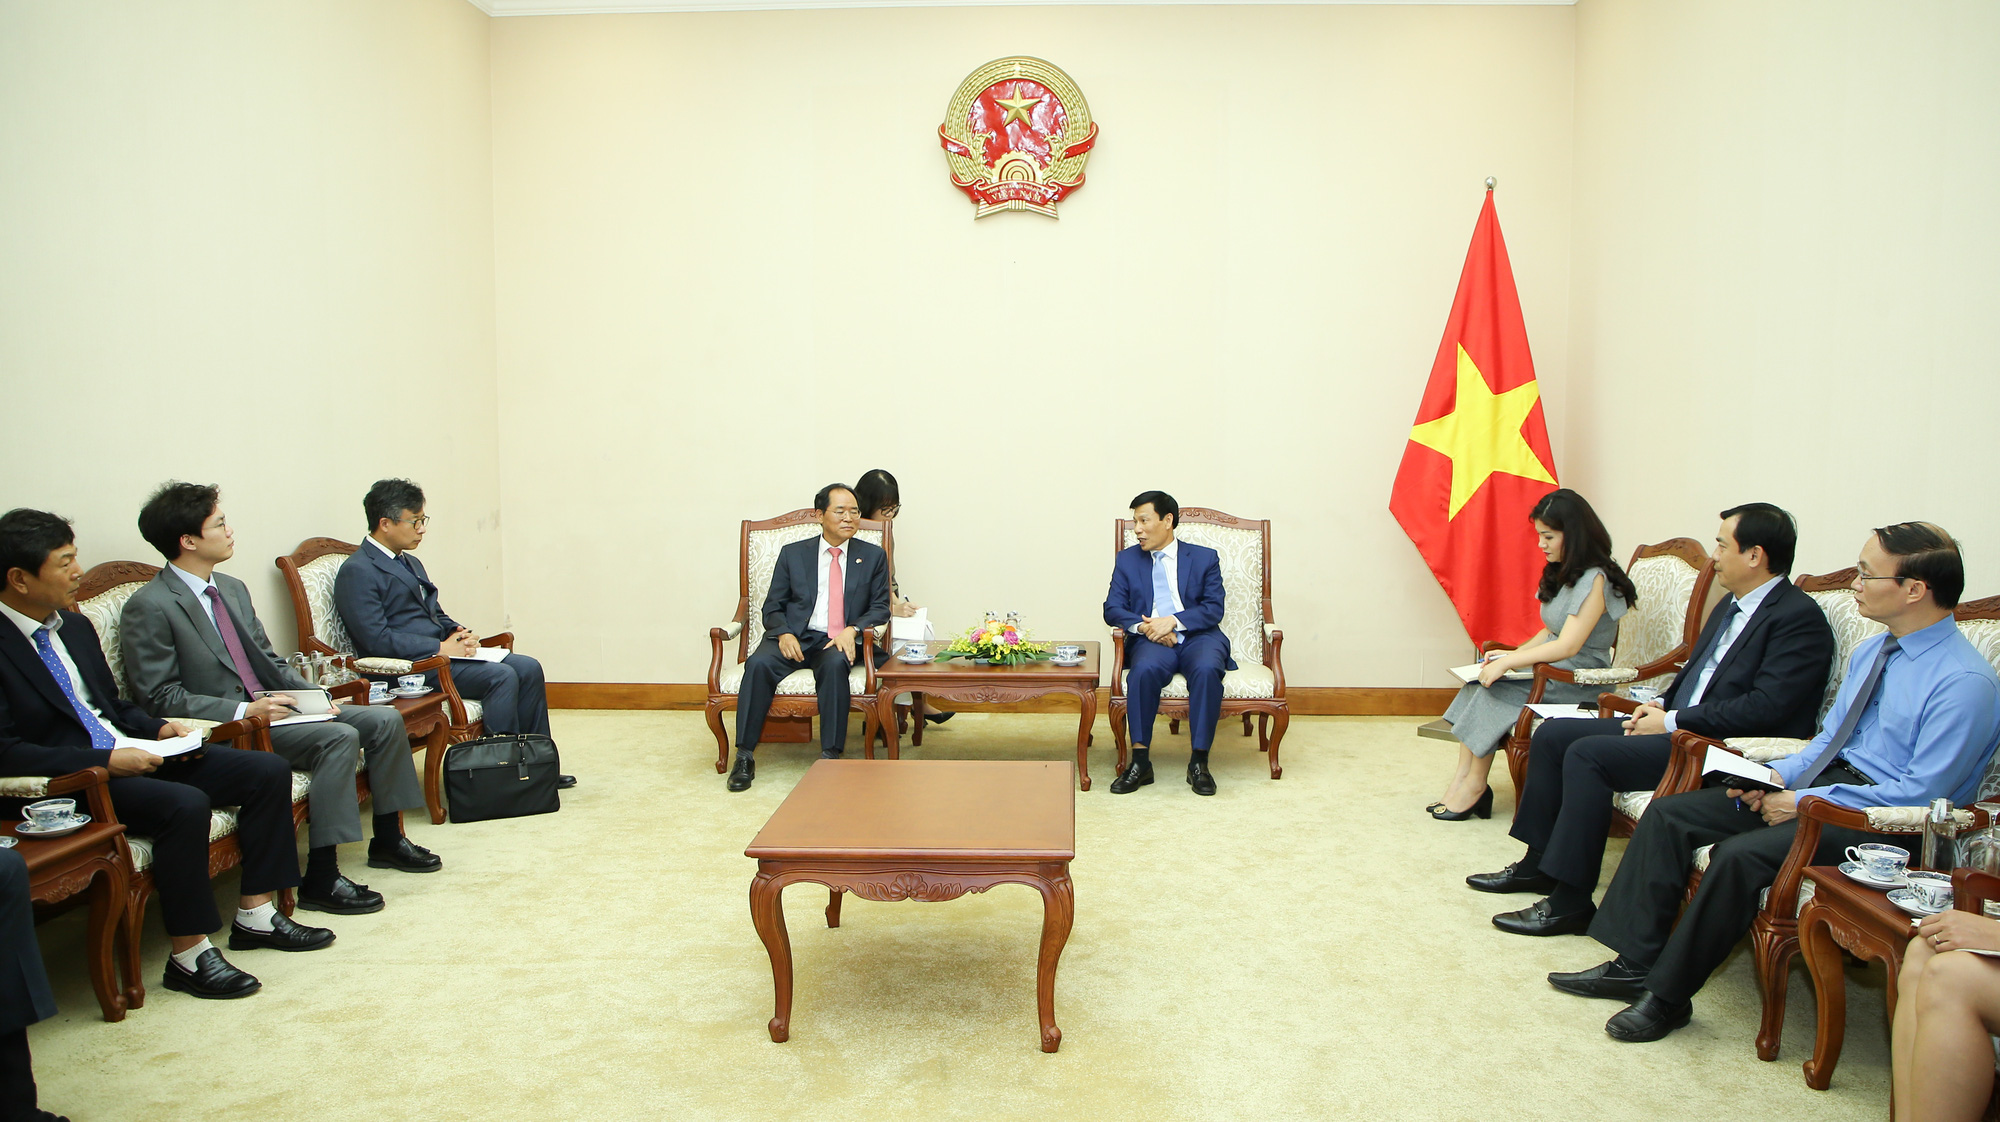 Bộ trưởng Nguyễn Ngọc Thiện: Việt Nam- Hàn Quốc tái khởi động mạnh mẽ các chương trình hợp tác văn hóa, thể thao và du lịch sau dịch Covid-19